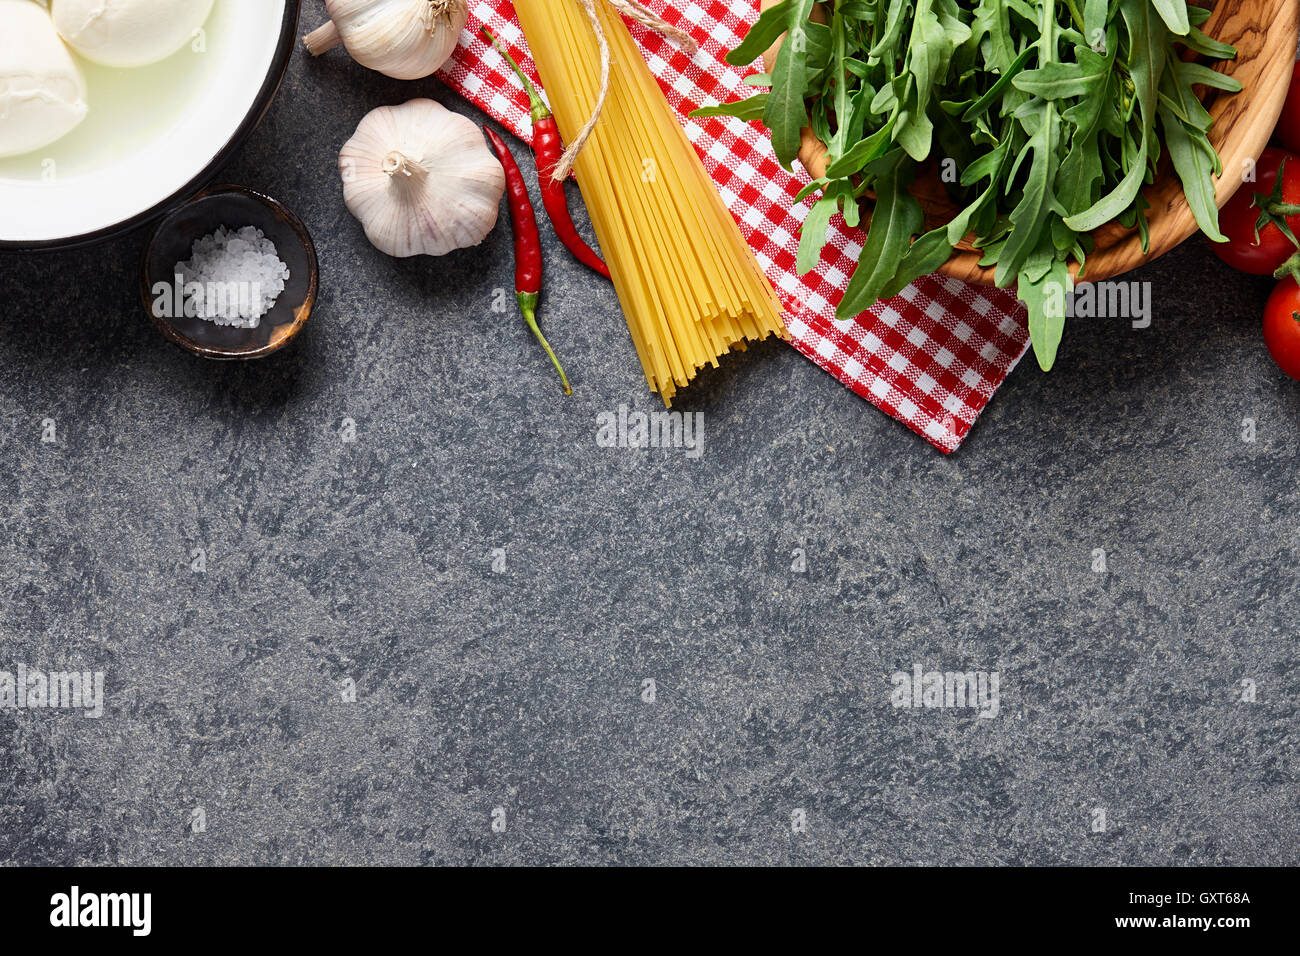 Italienische Küche Zutaten Hintergrund mit rohen Spaghetti, Rucola, Mozzarella-Käse, Paprika, Knoblauch, Salz und Tomaten Stockfoto